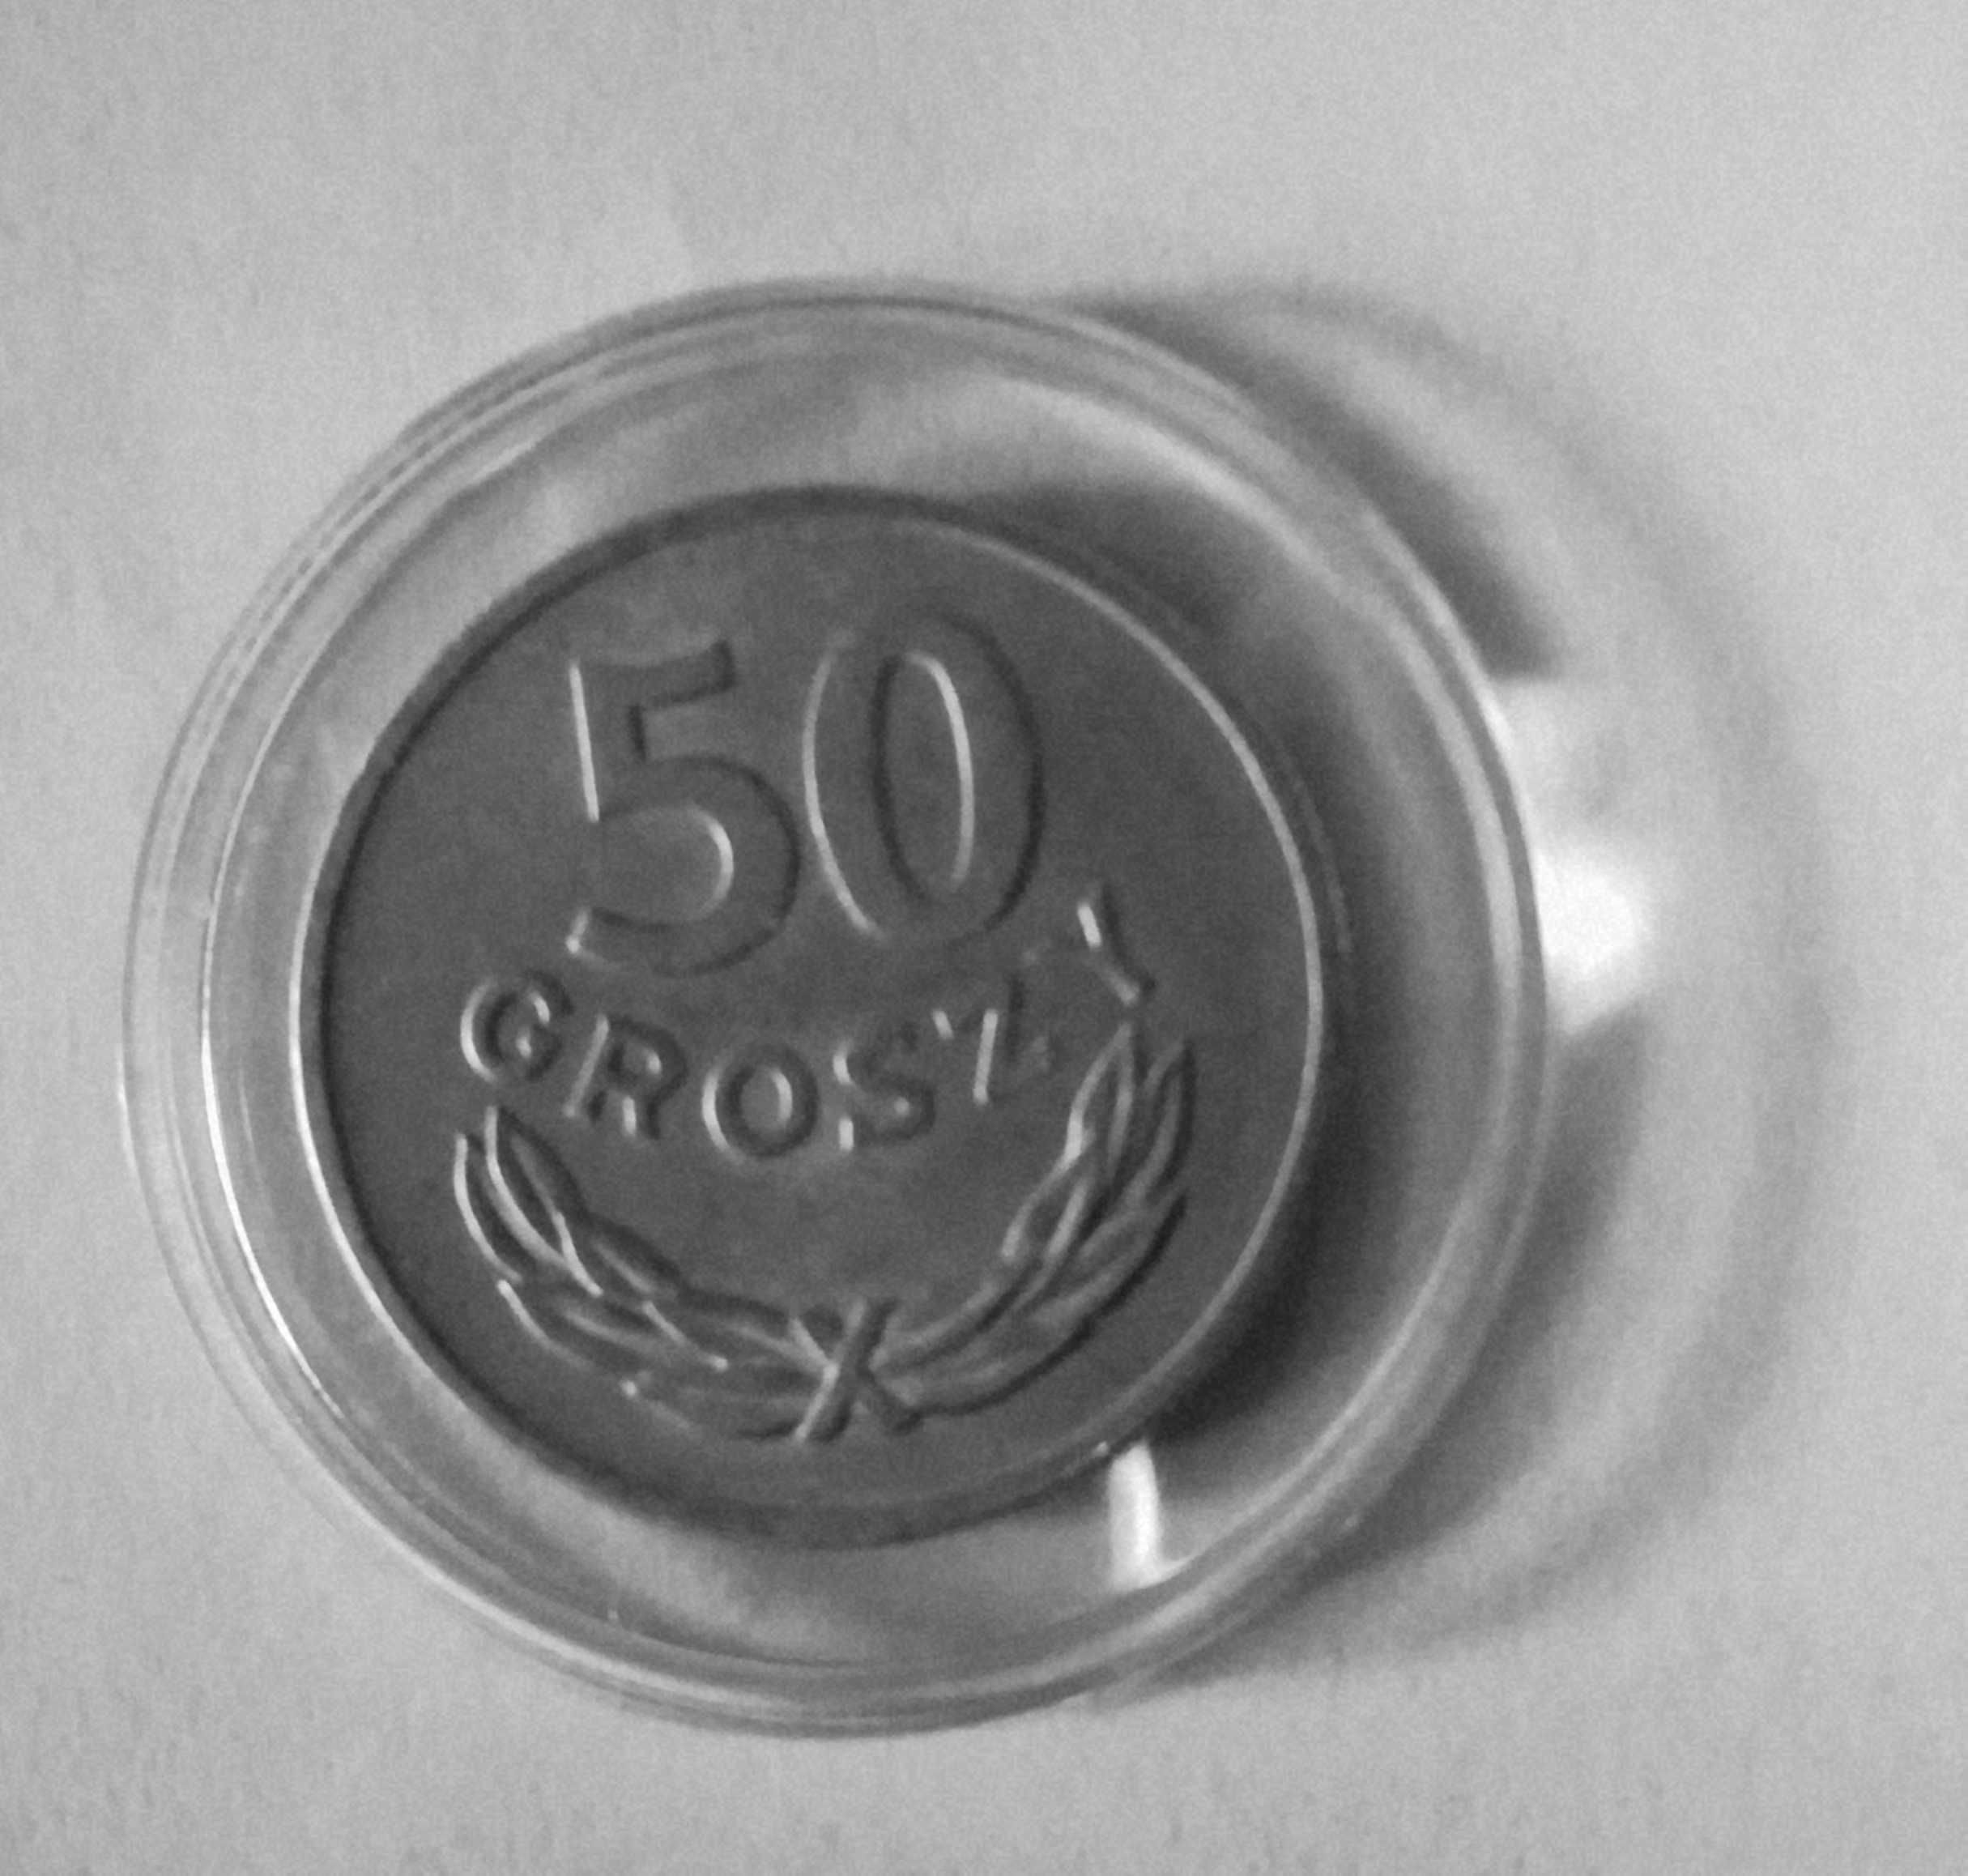 Moneta 50 gr z 1949 r Bez znaku menniczego. Stan doskonały